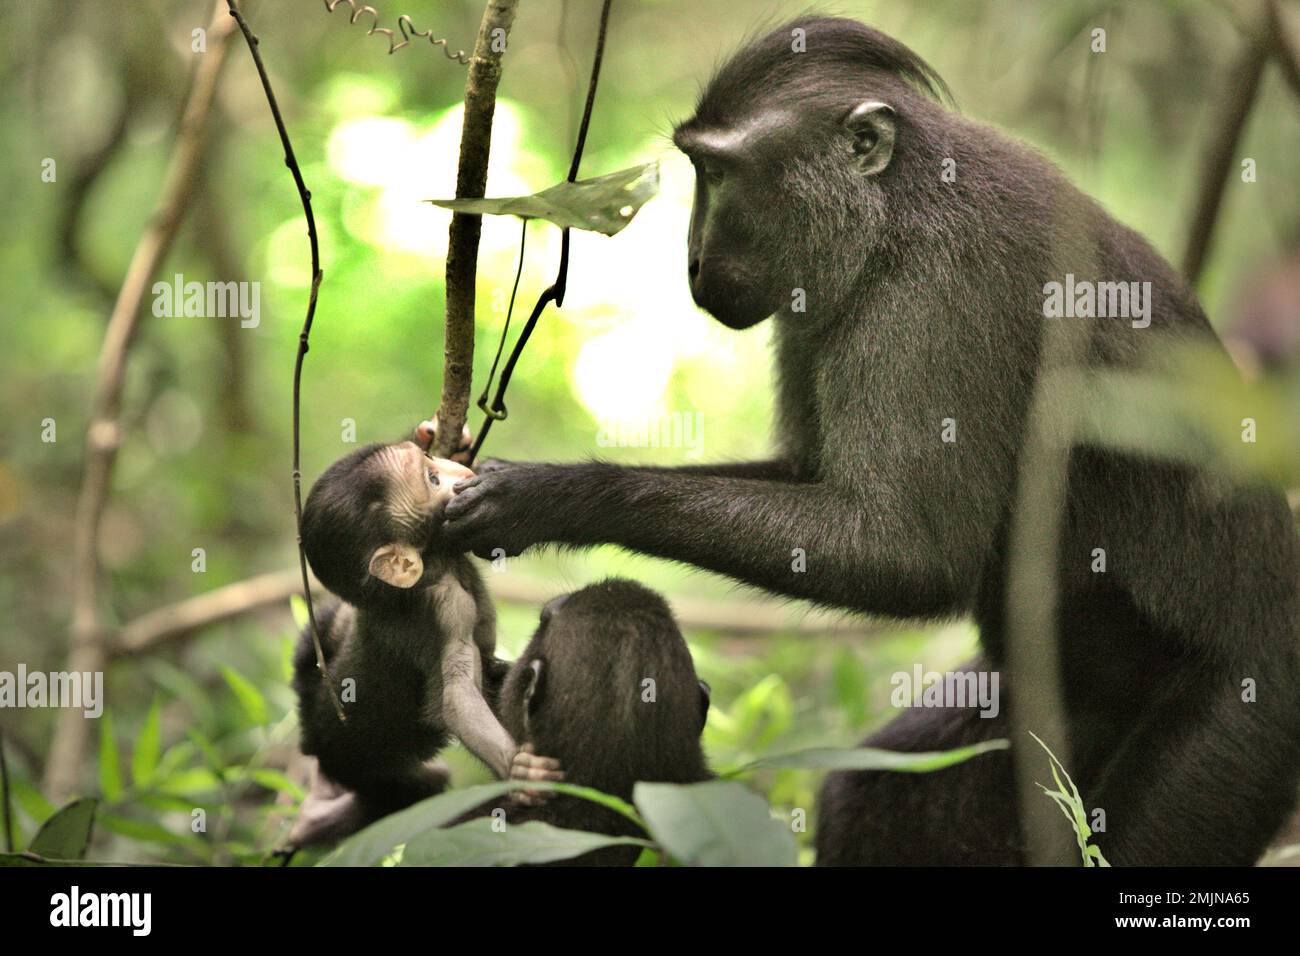 Eine ausgewachsene Sulawesi-Schwarzkammmakake (Macaca nigra) tröstet ein Kleinkind während der Entwöhnungsphase in ihrem natürlichen Lebensraum, dem Tiefland-Regenwald im Tangkoko Nature Reserve, North Sulawesi, Indonesien. Die Entwöhnungsphase eines makaken Säuglings – im Alter von 5 Monaten bis zum Alter von 1 Jahren – ist die früheste Lebensphase, in der die Säuglingssterblichkeit am höchsten ist. Primate Wissenschaftler des Macaca Nigra Project beobachteten, dass '17 der 78 Säuglinge (22%) im ersten Lebensjahr verschwanden. Acht dieser 17 Toten wurden mit großen Stichwunden gefunden. Der Klimawandel hat inzwischen Auswirkungen. Stockfoto